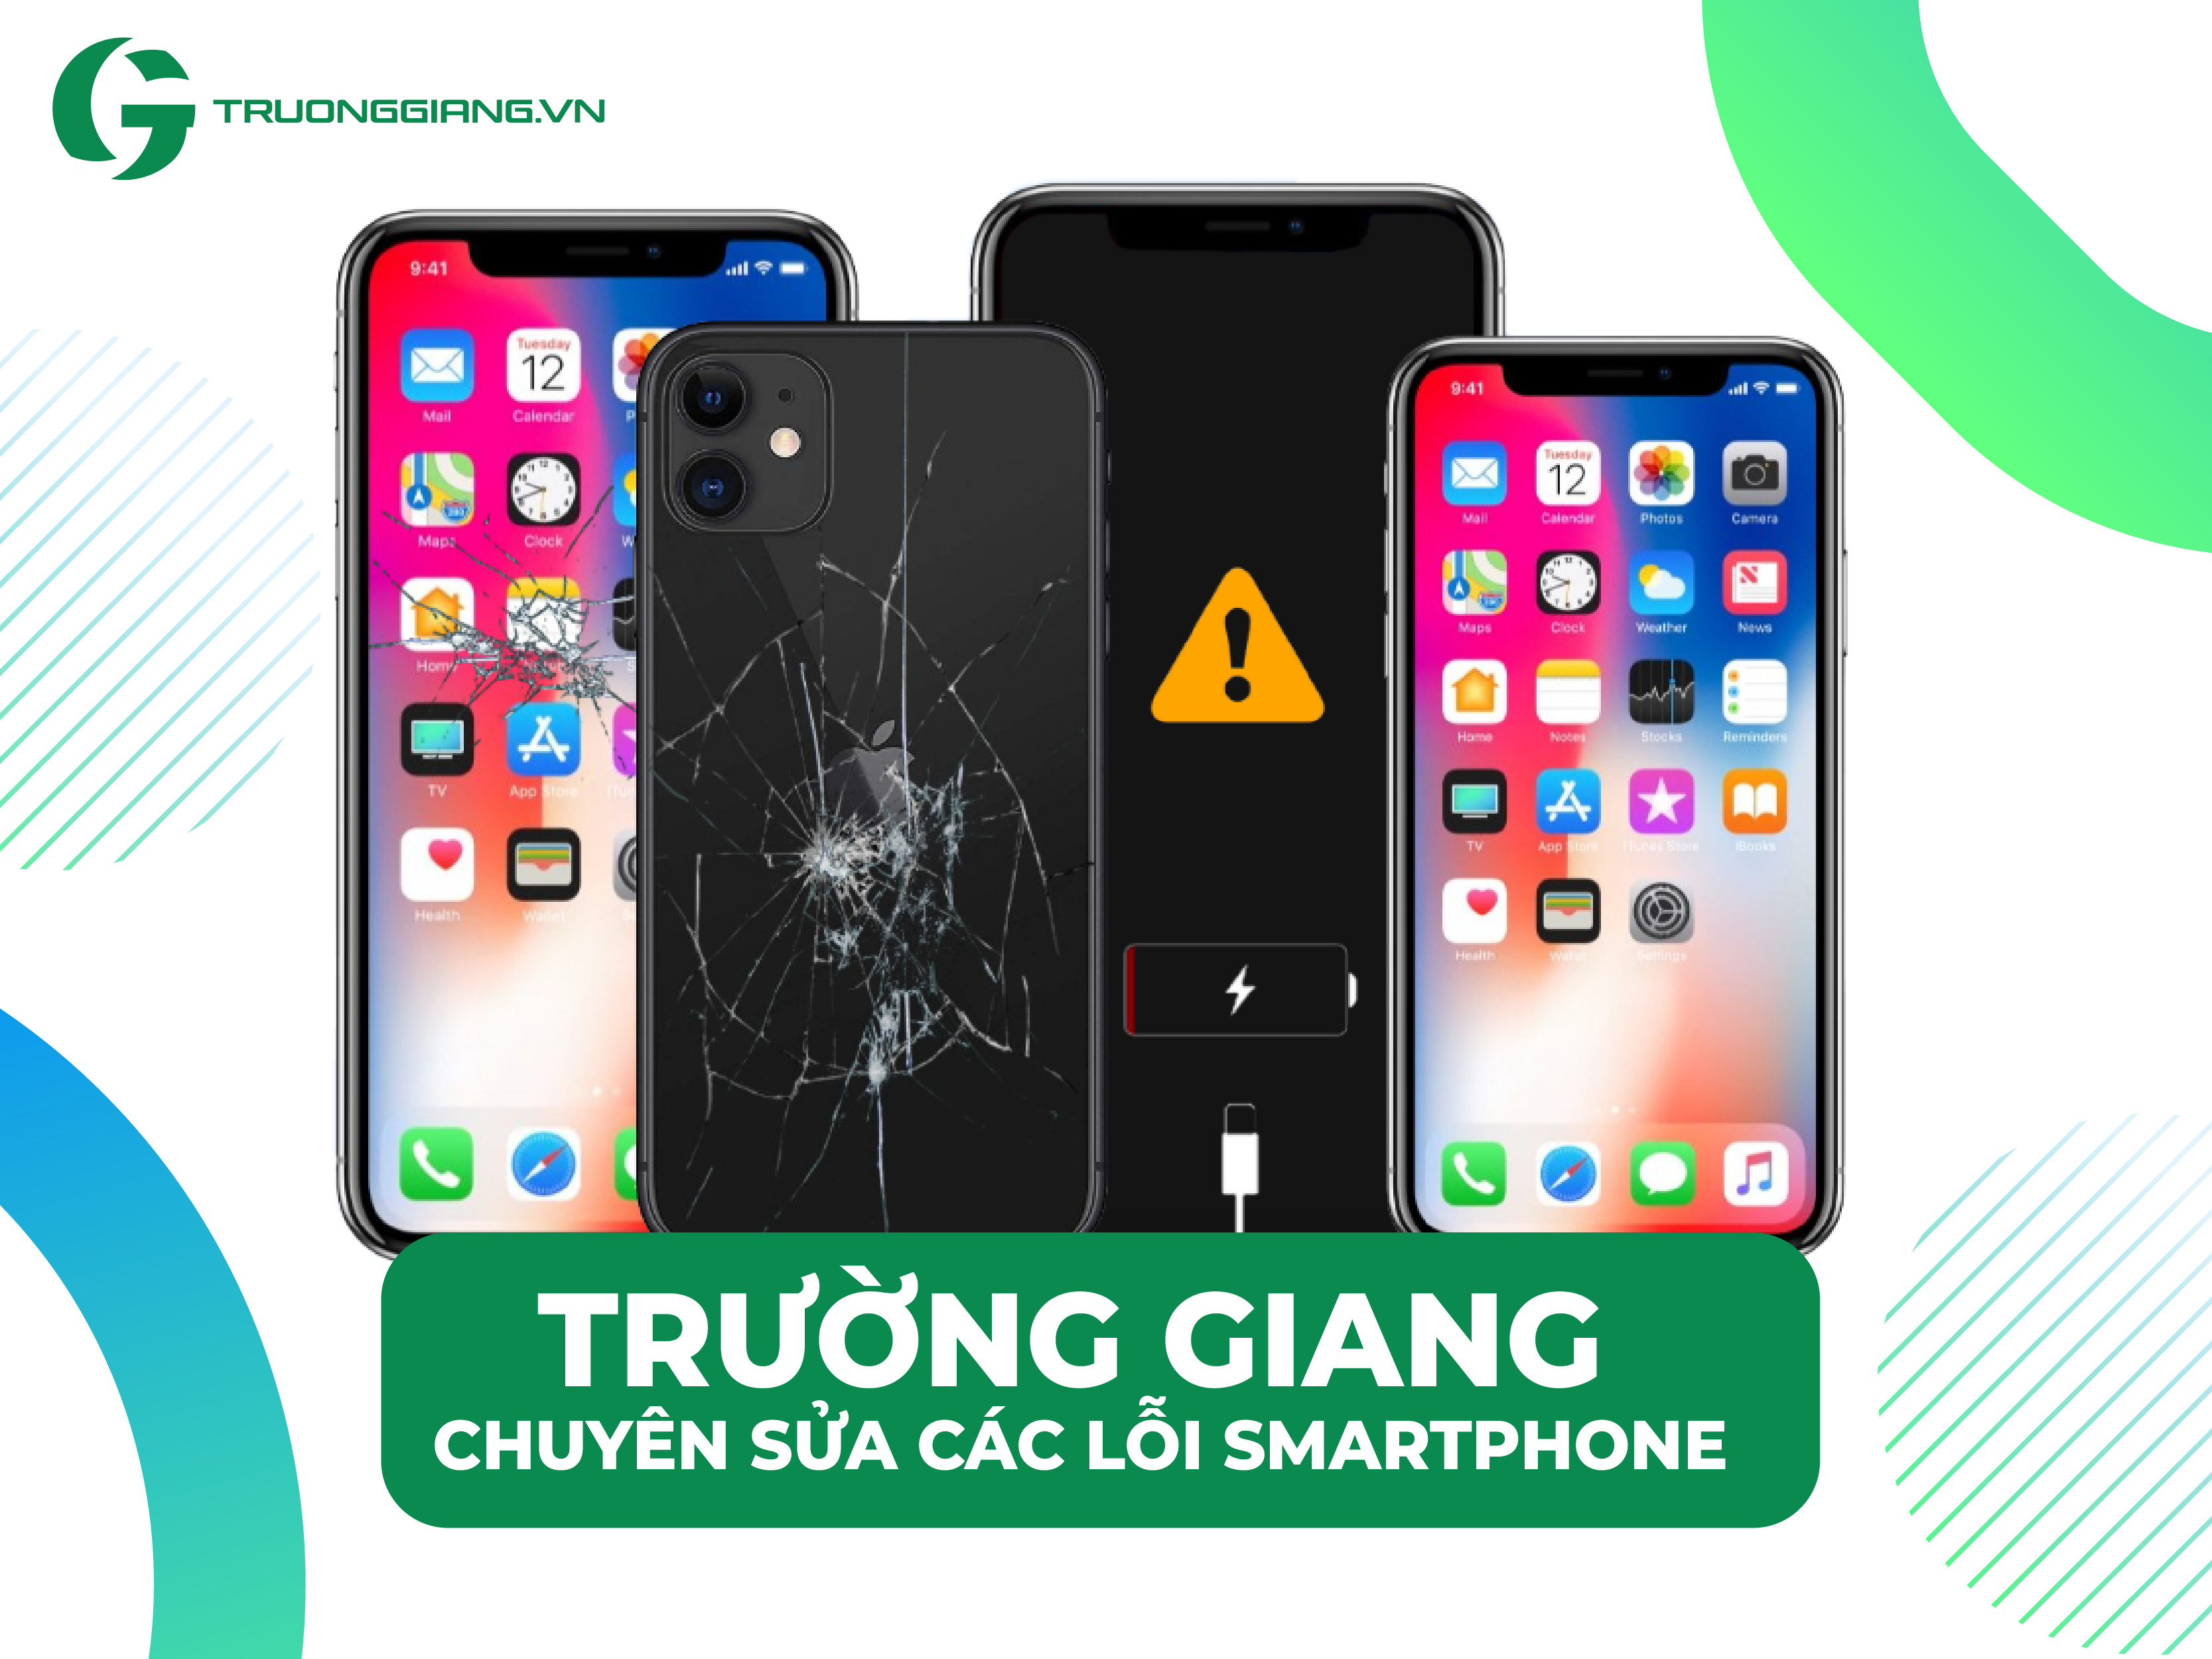 Trường Giang chuyên sửa các lỗi smartphone